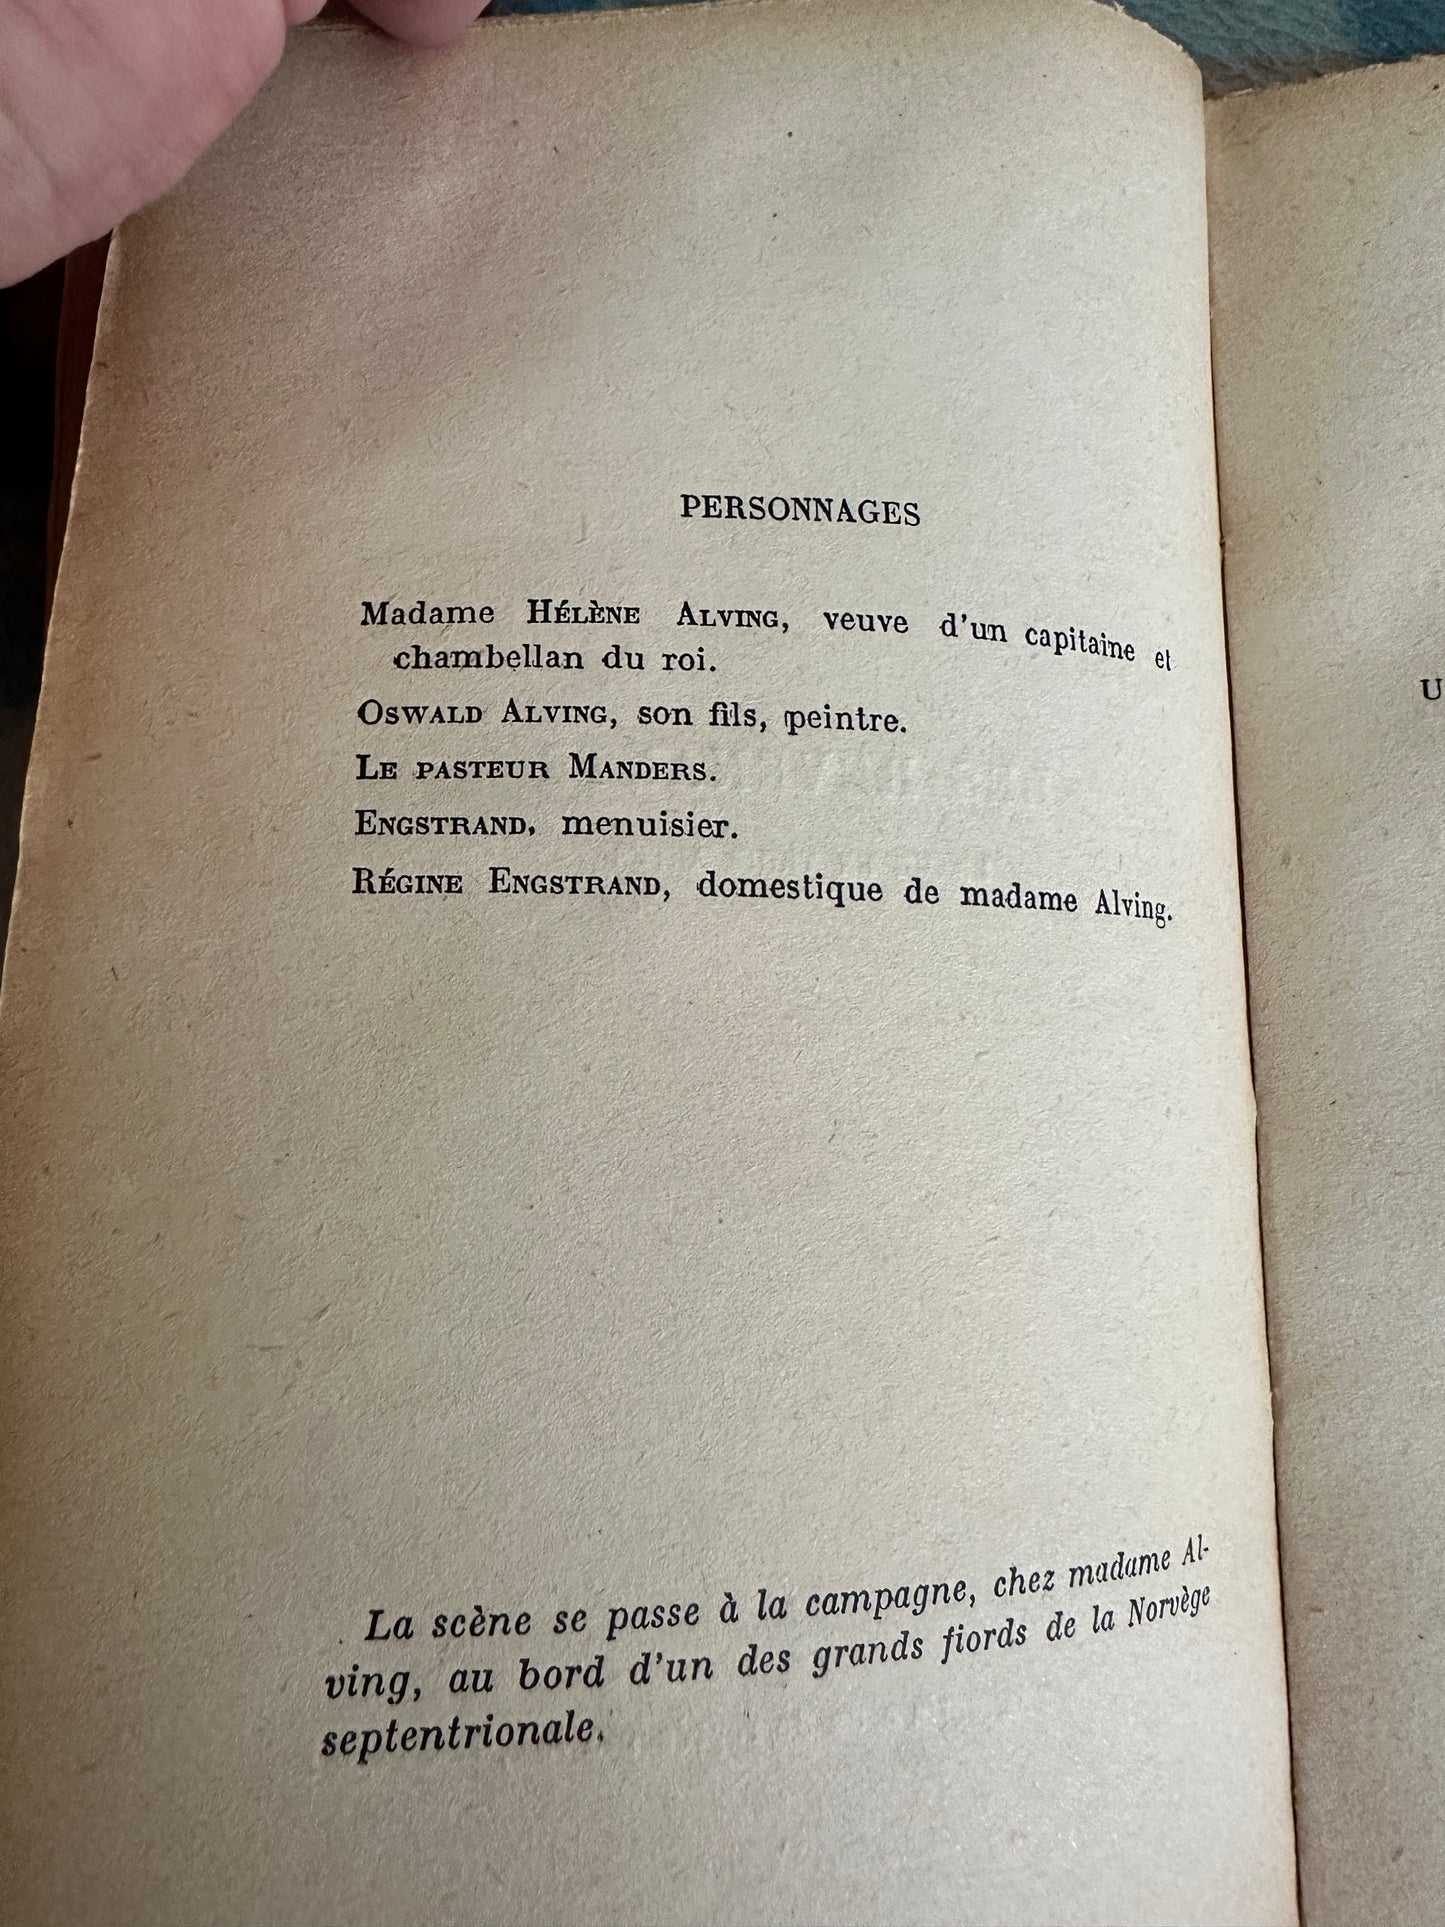 1927 Les Revenants / Maison de Poupée - Henrik Ibsen(Perrin & Co)